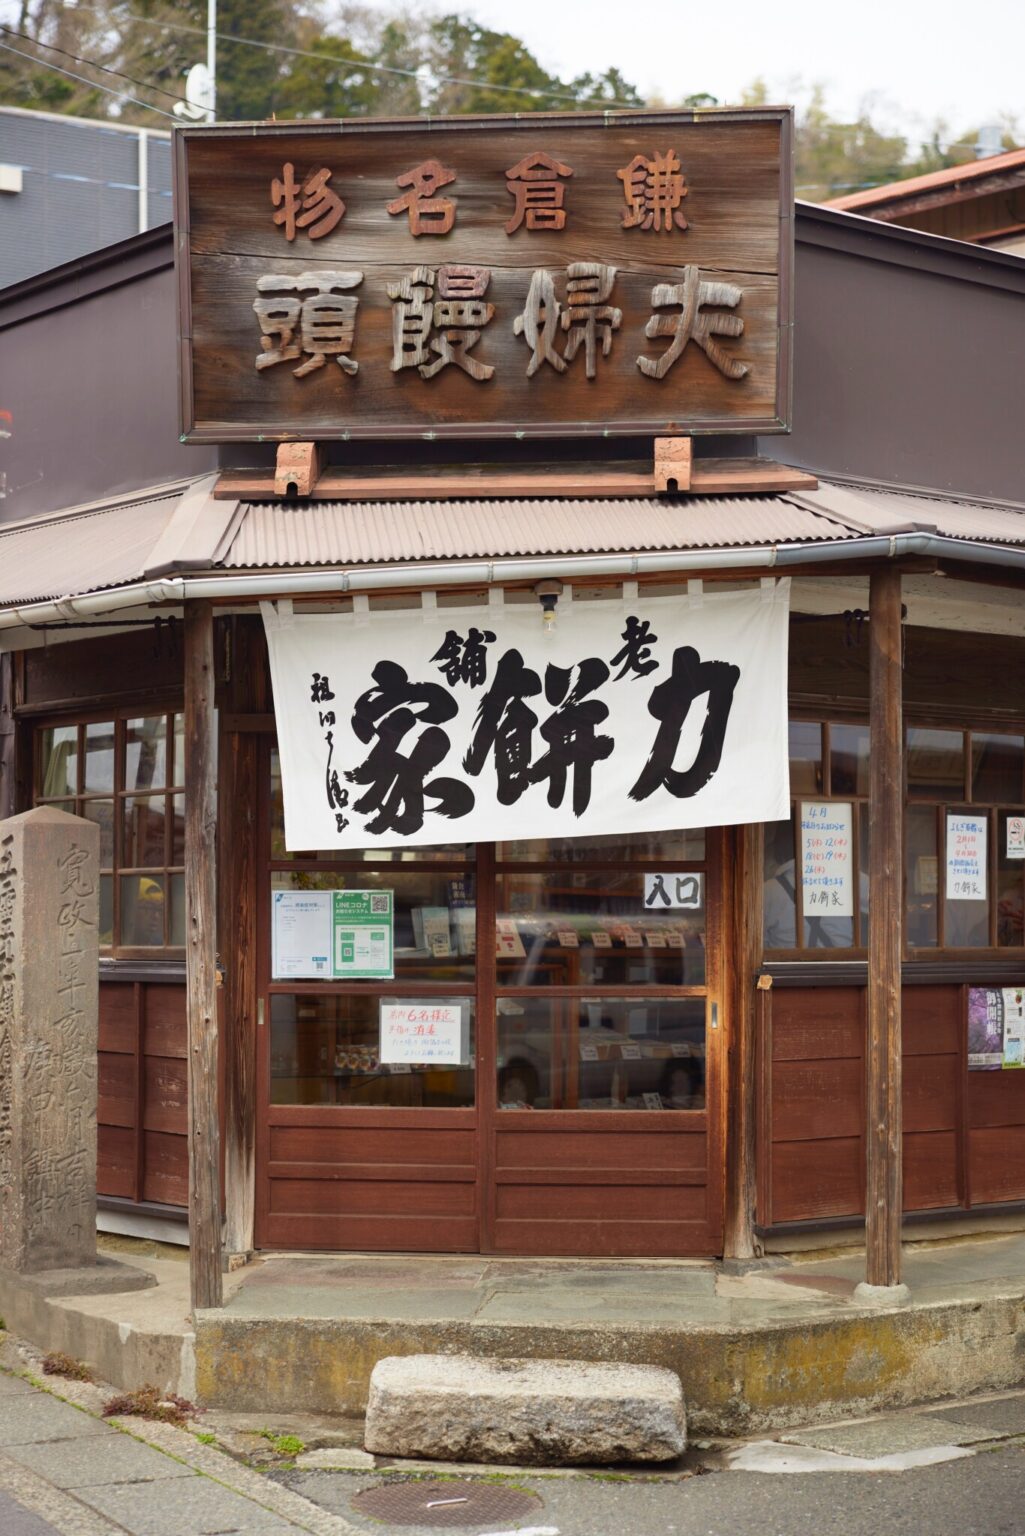 江戸時代から300年以上続く老舗の〈力餅家〉。道ゆく人の目をひくのれん。店名の字は、書家・林祖洞の手によるもの。